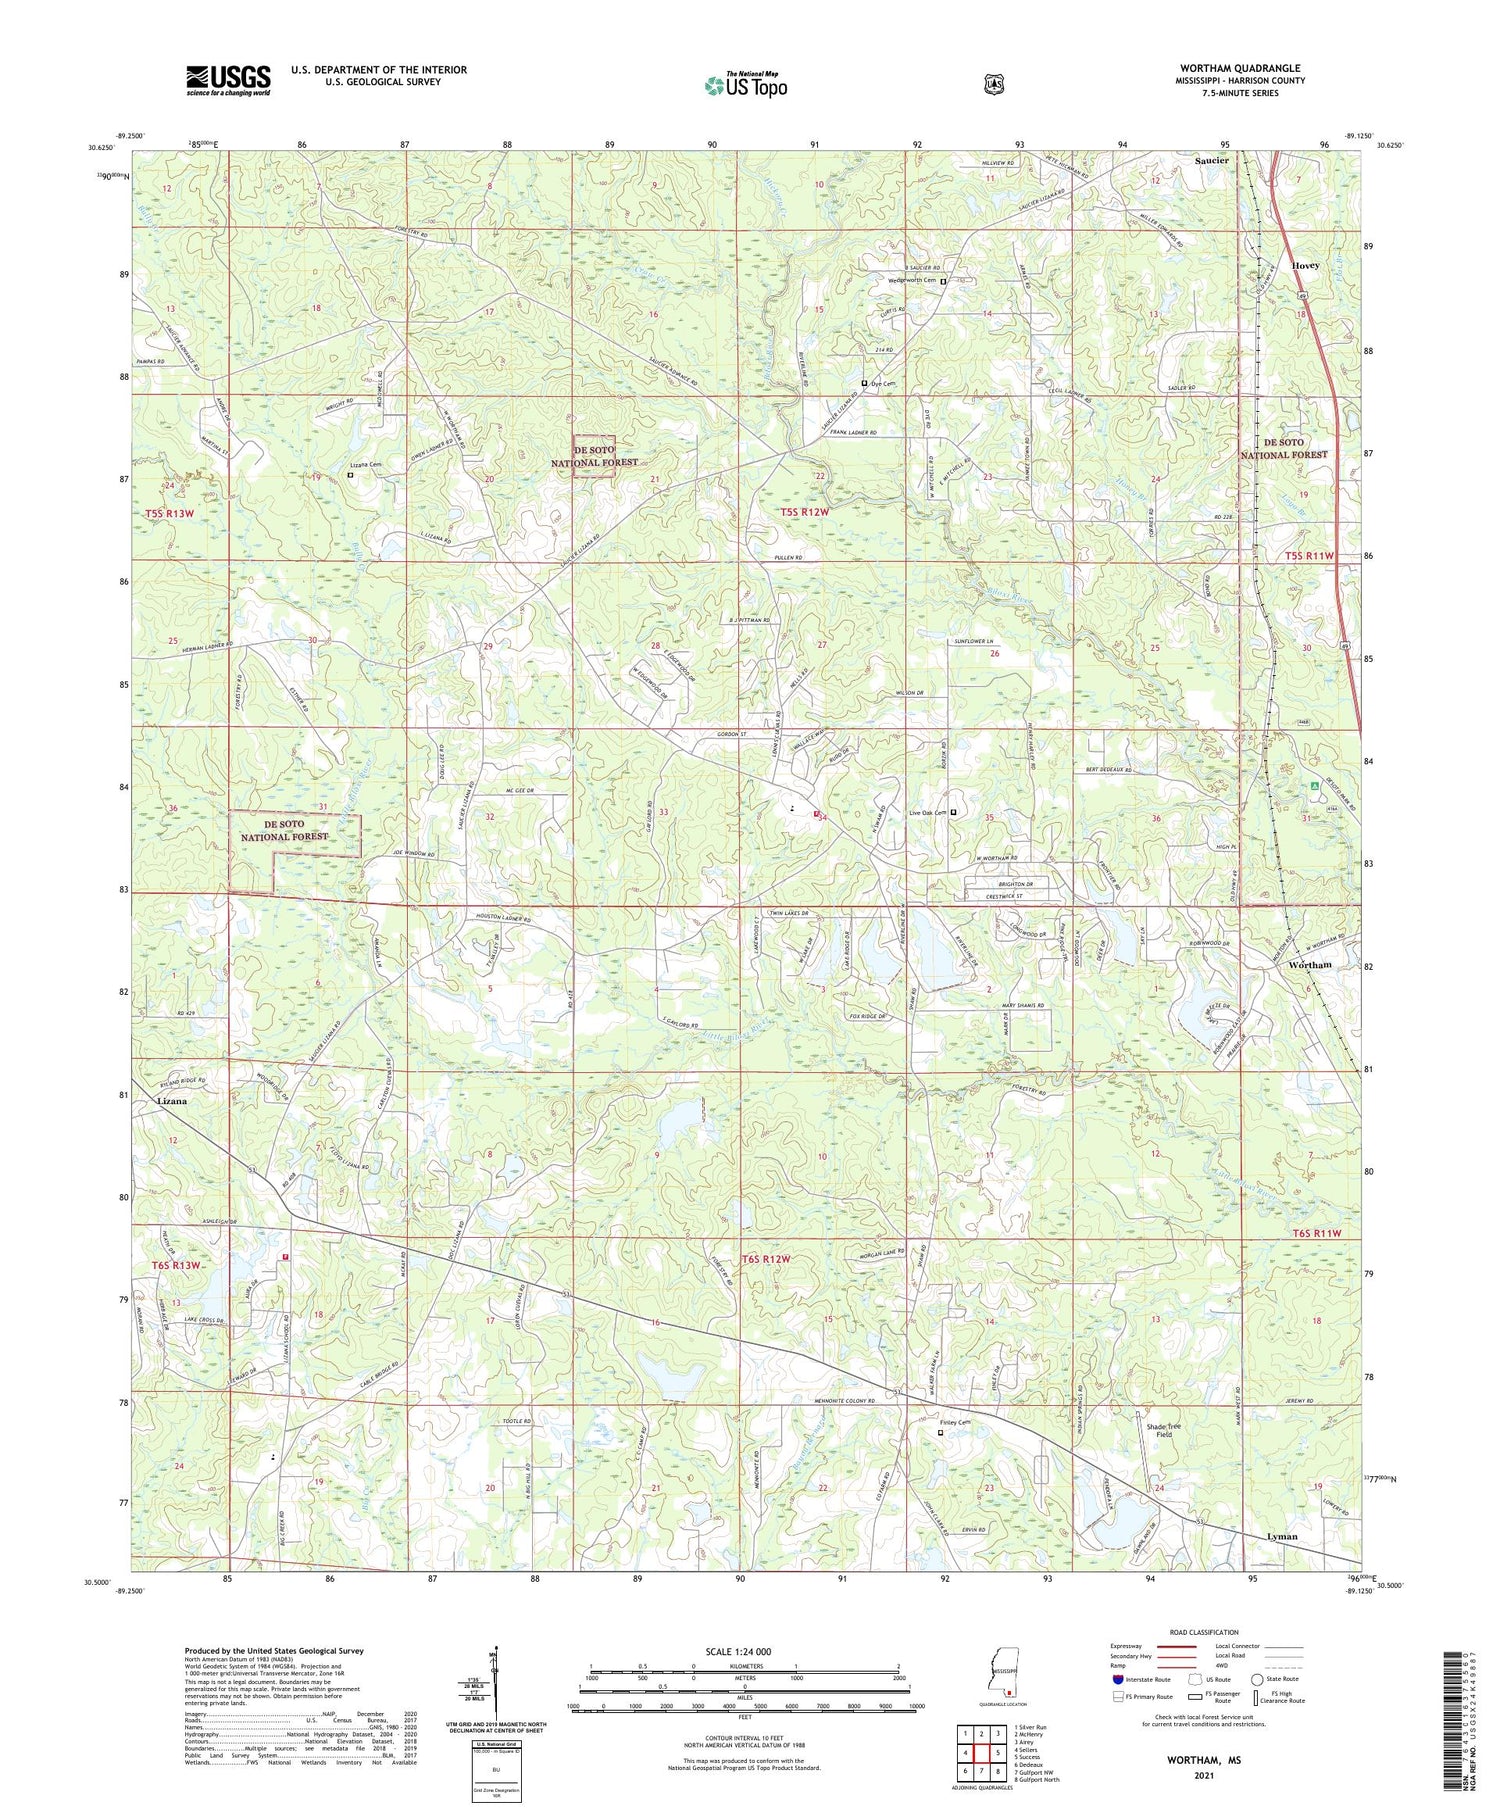 Wortham Mississippi US Topo Map Image